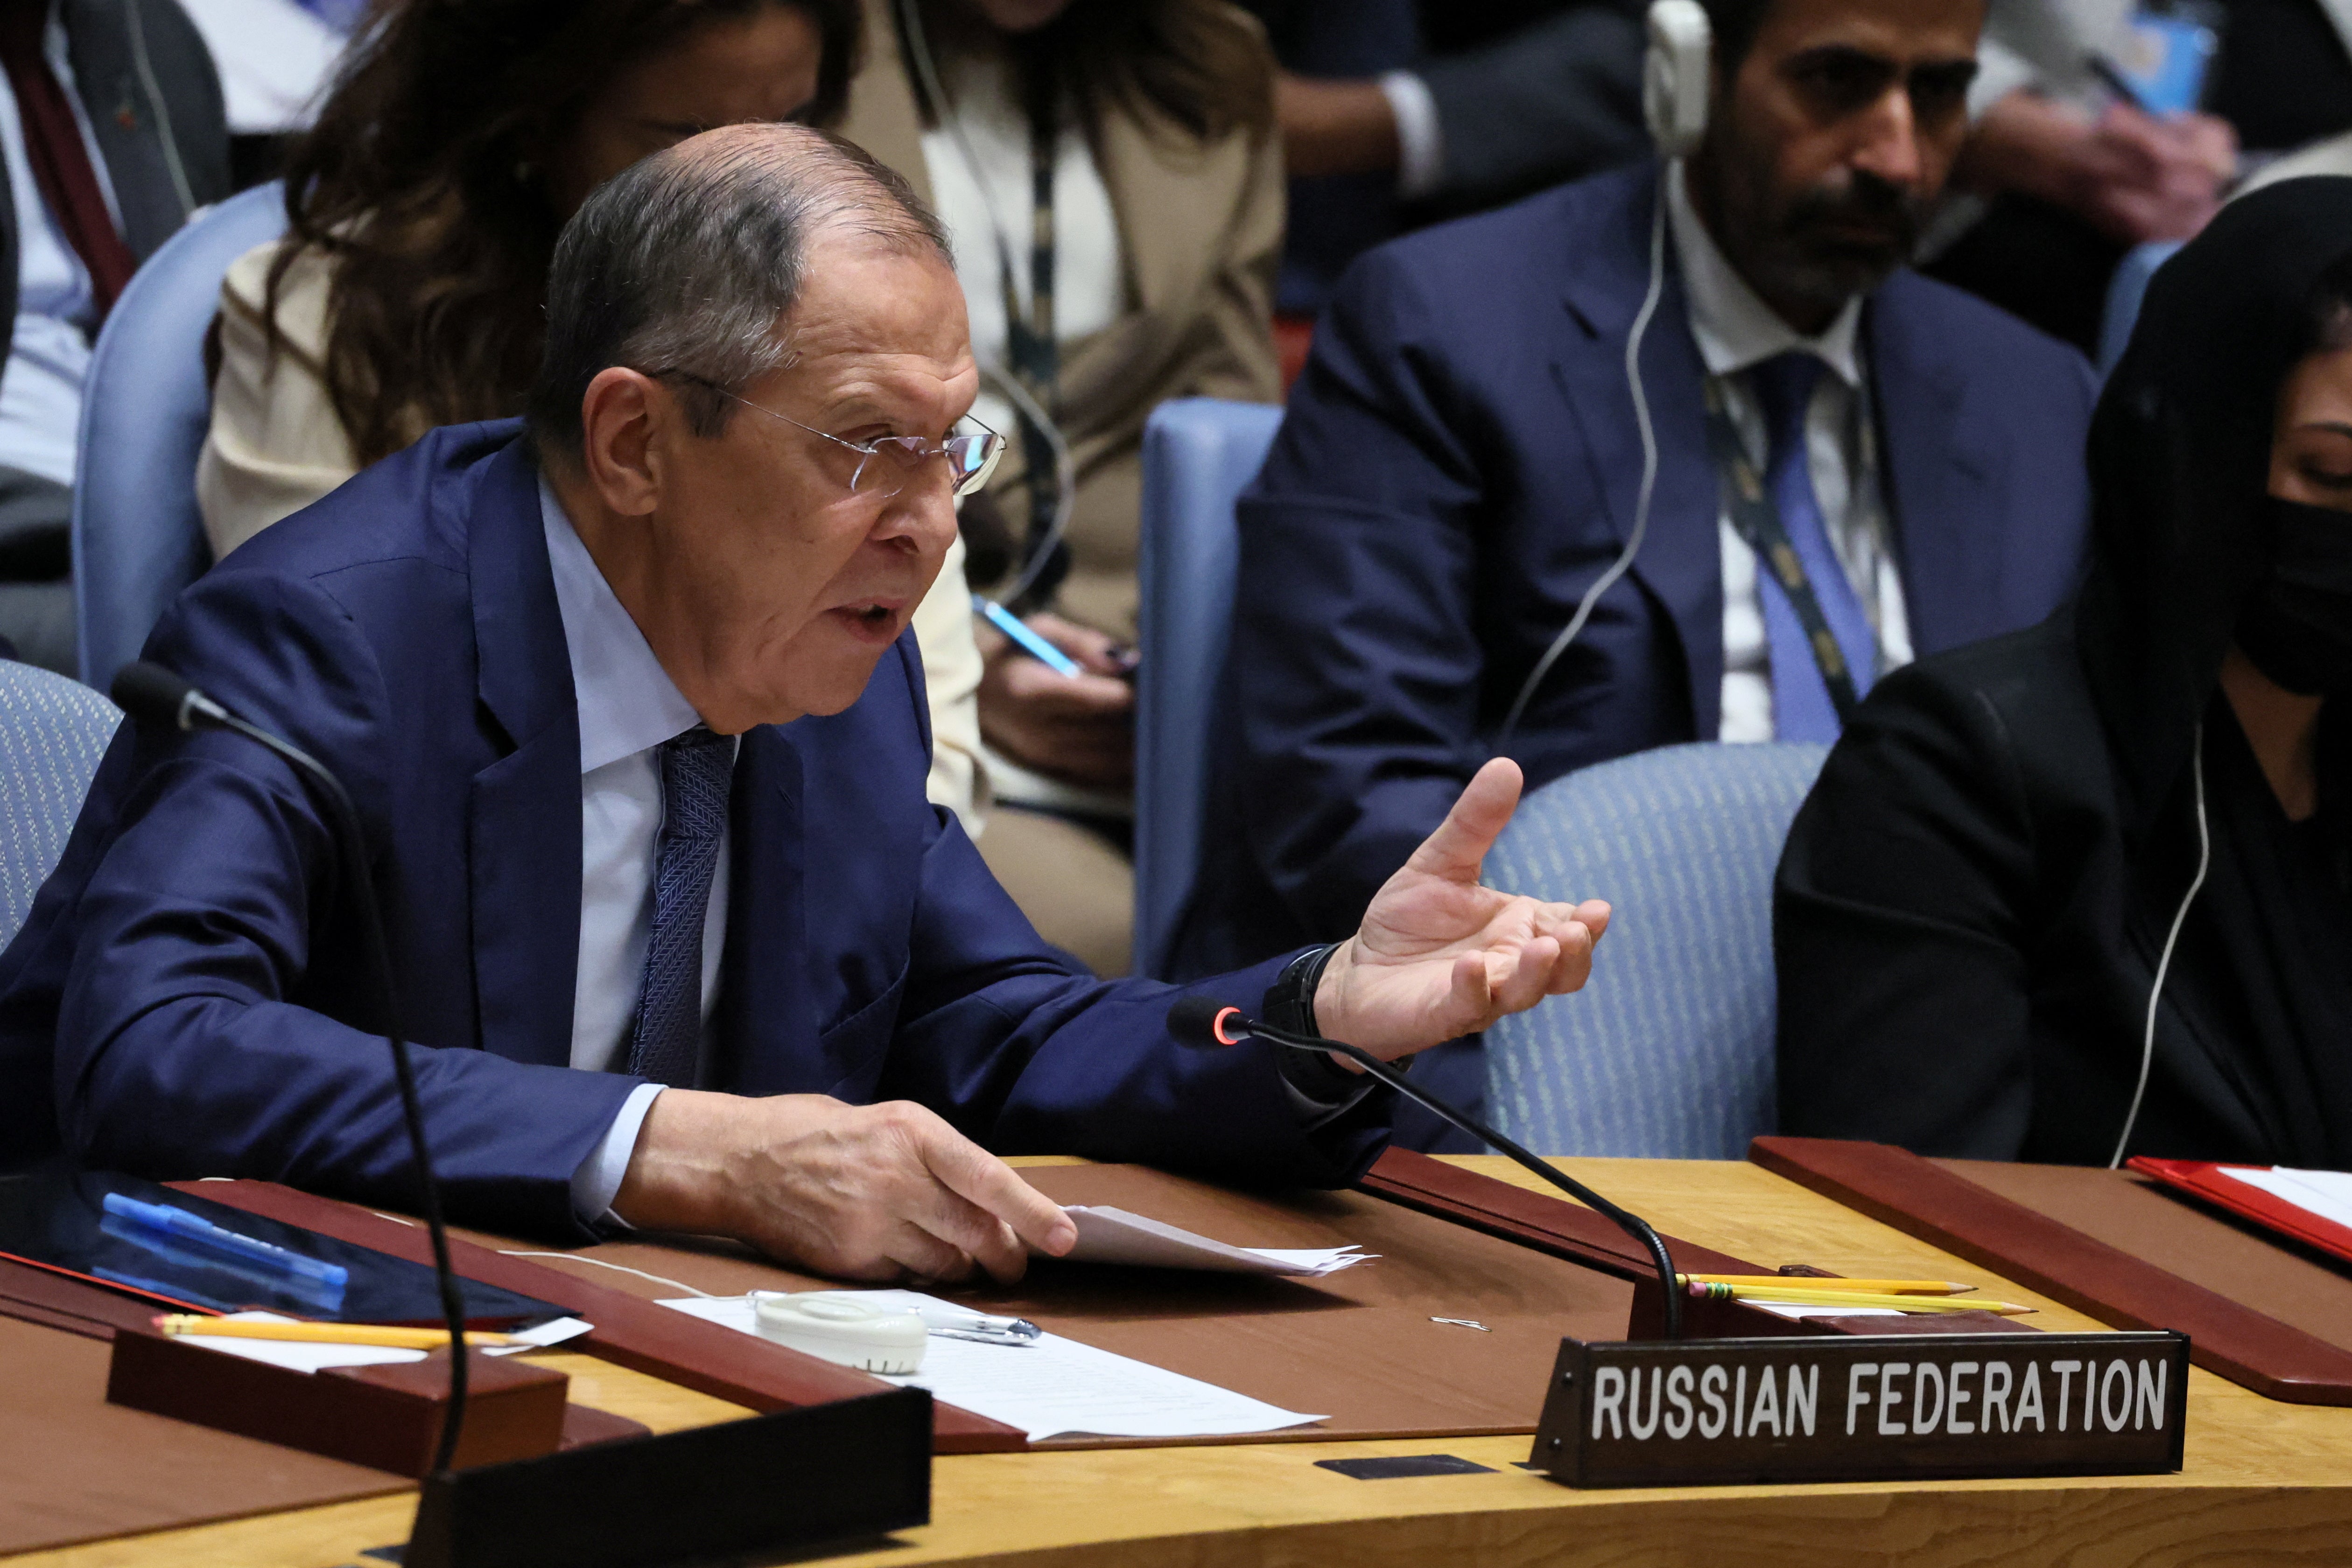 El ministro de Asuntos Exteriores de Rusia, Sergei Lavrov, habla durante una reunión de alto nivel del Consejo de Seguridad de las Naciones Unidas